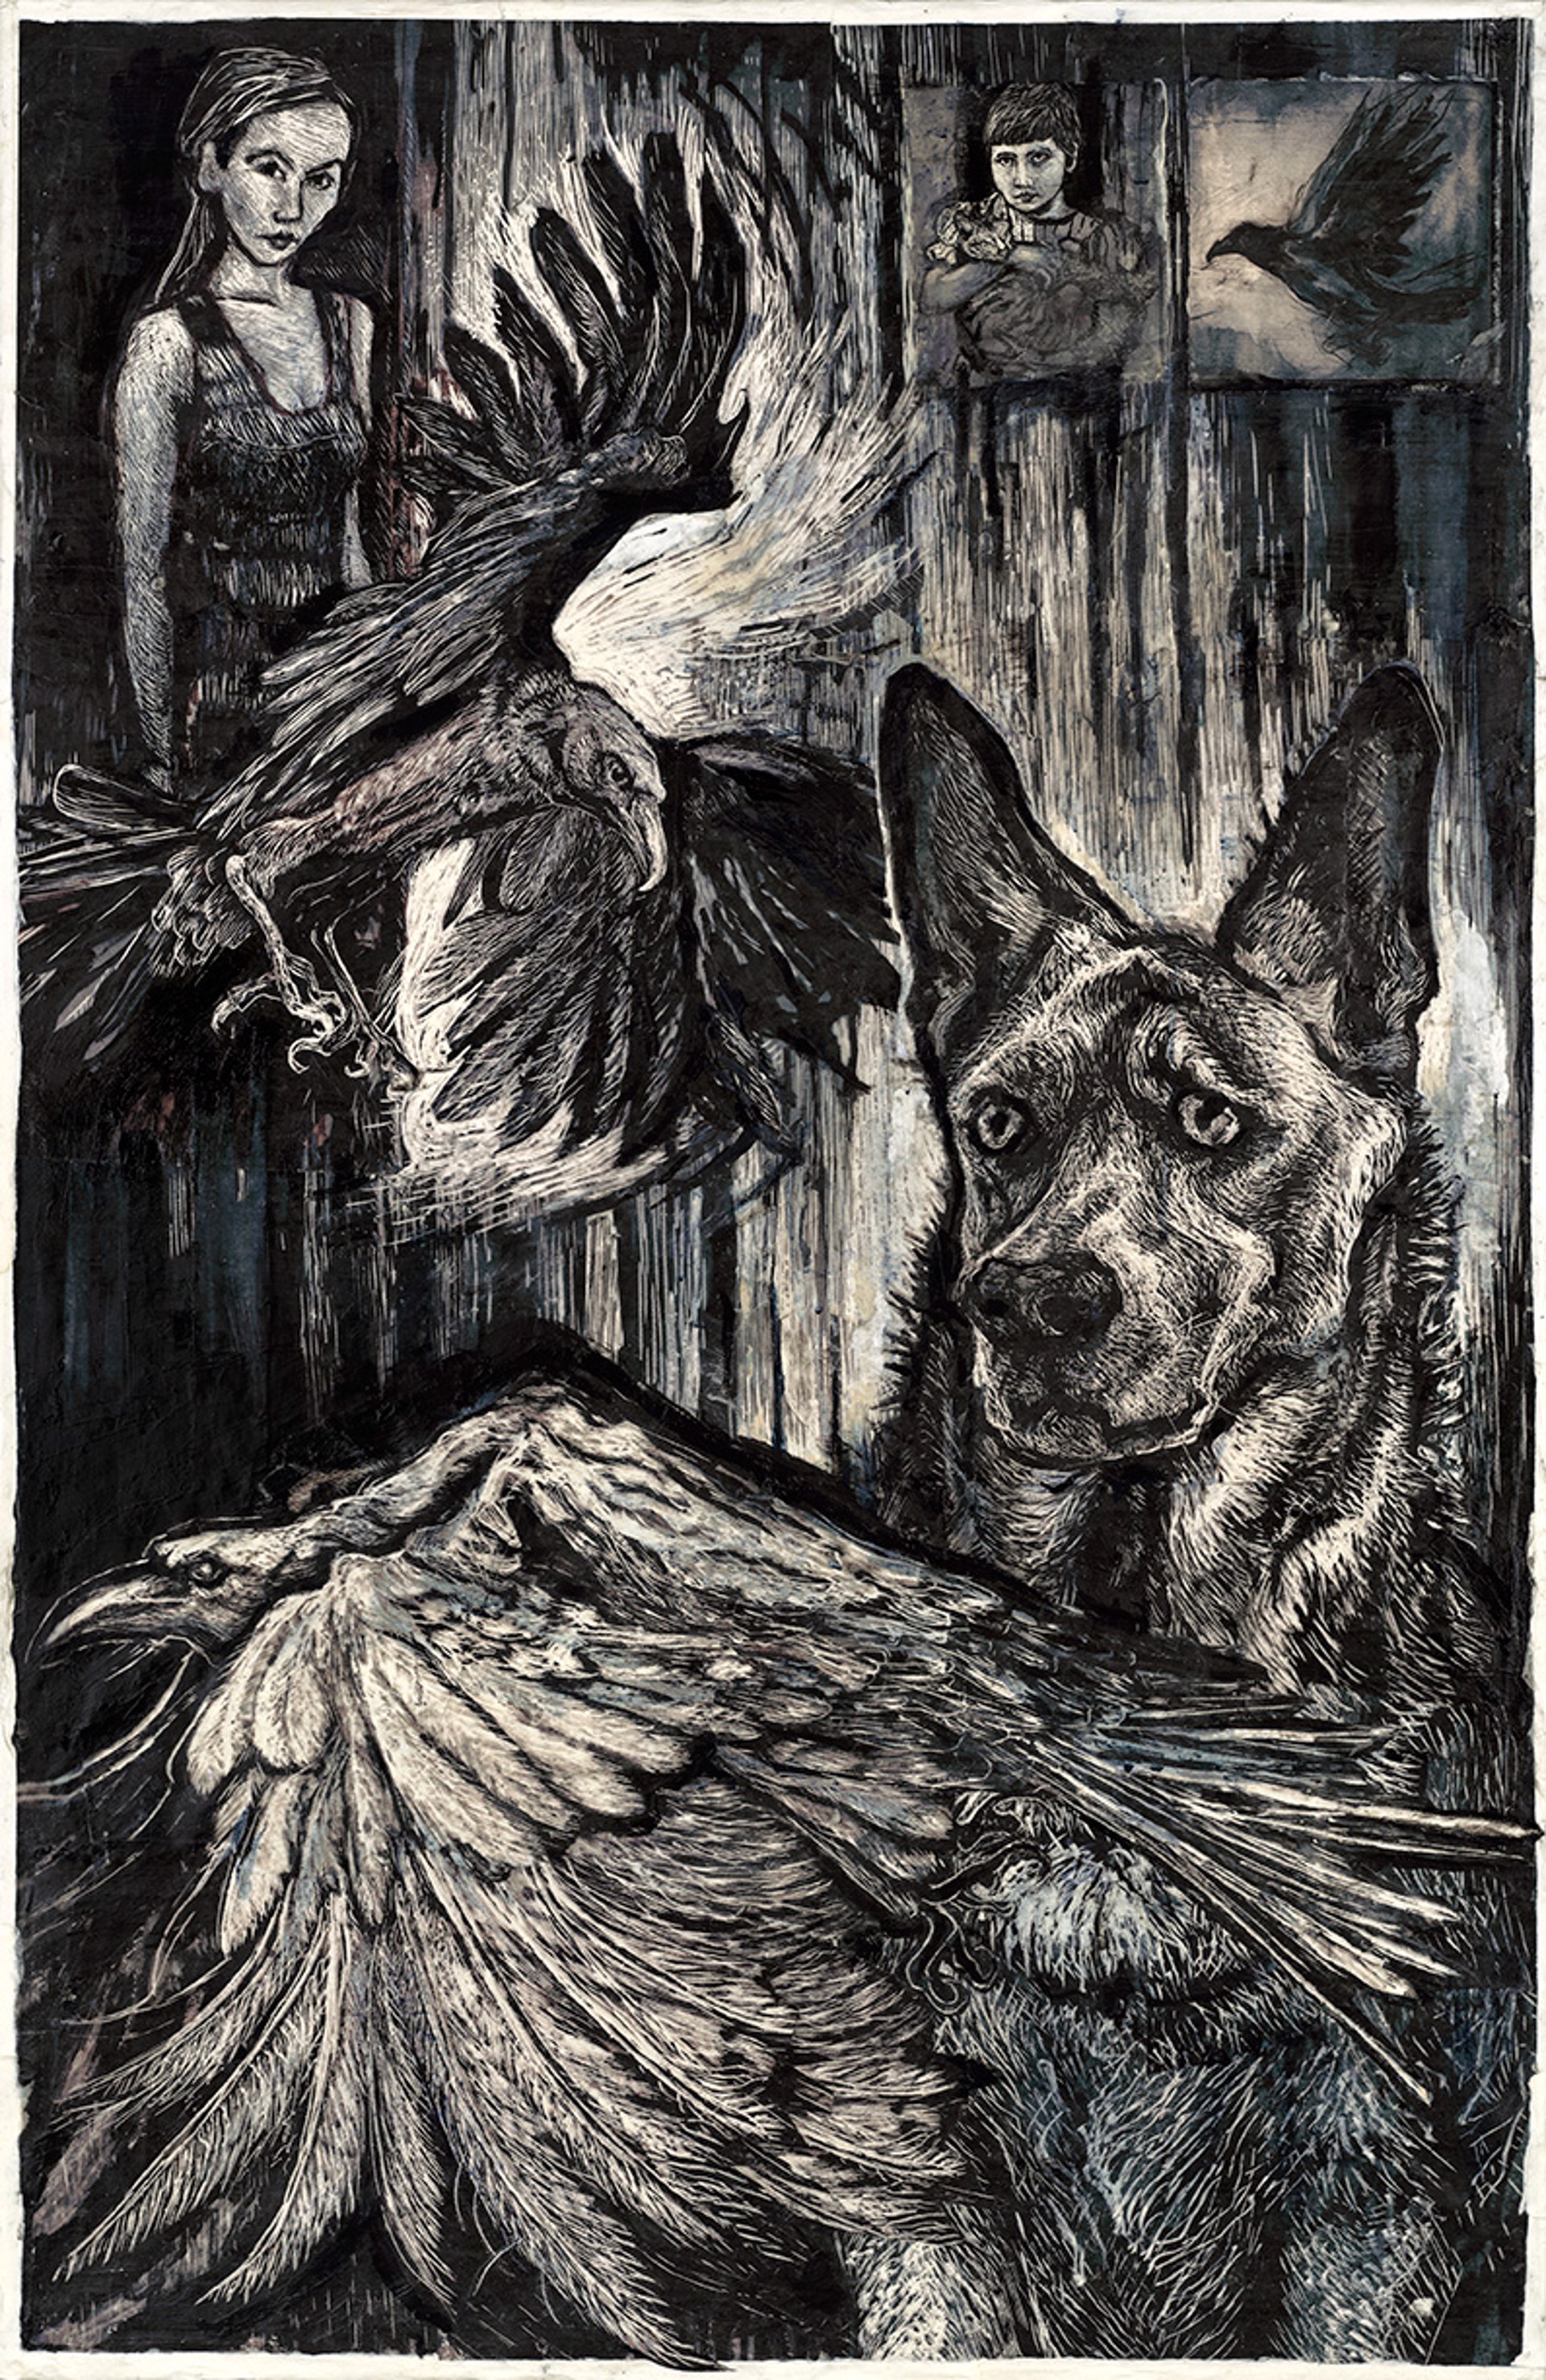 Yana's Birds by Rosemary Feit Covey